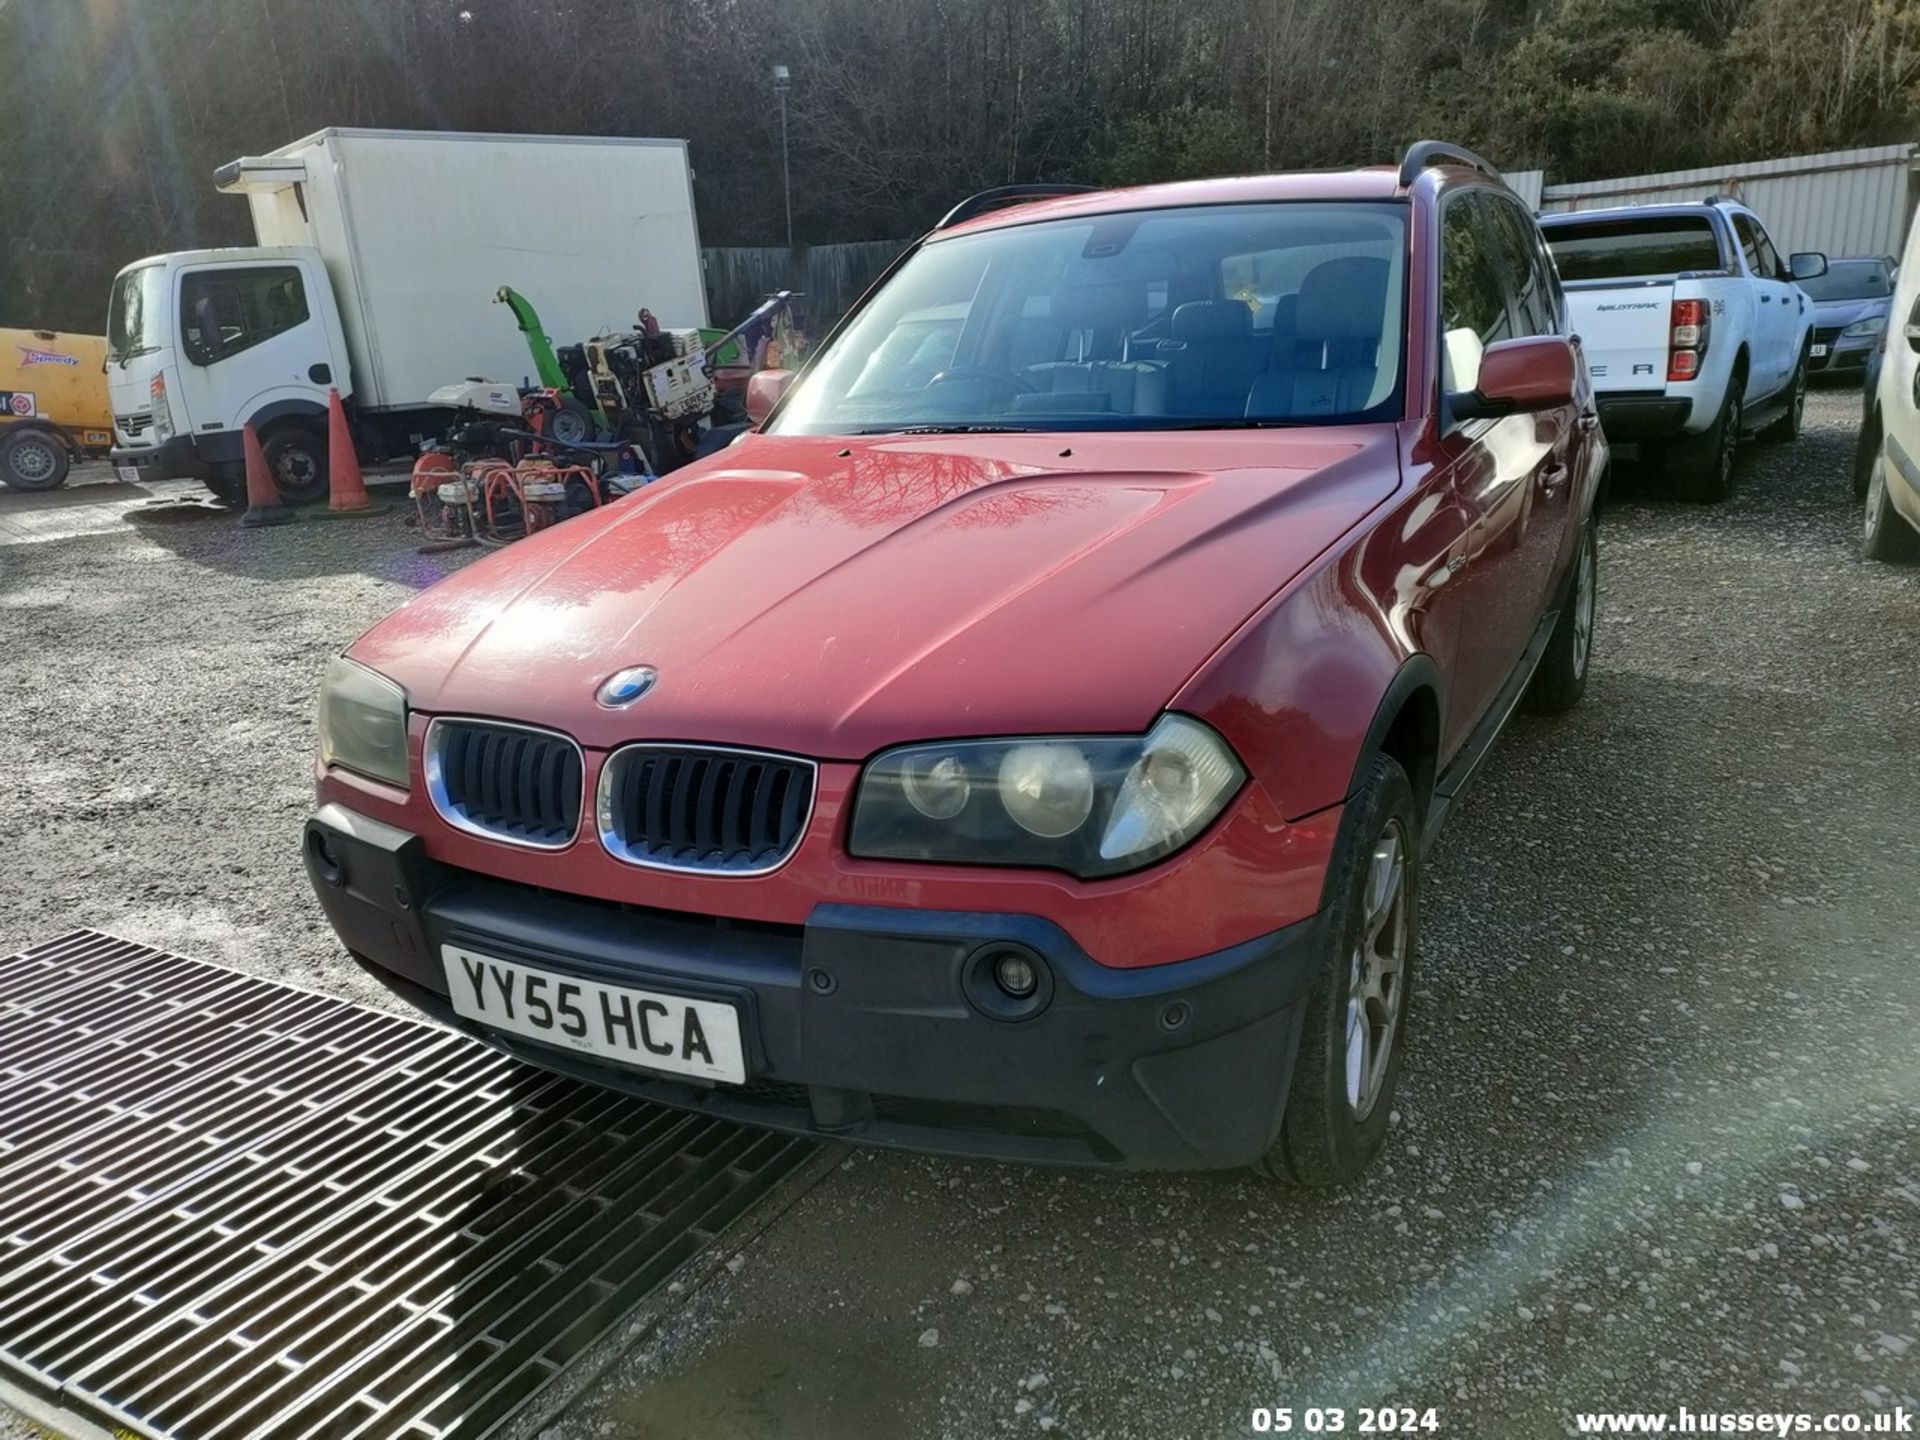 05/55 BMW X3 D SE - 1995cc 5dr Estate (Red, 188k) - Image 10 of 51